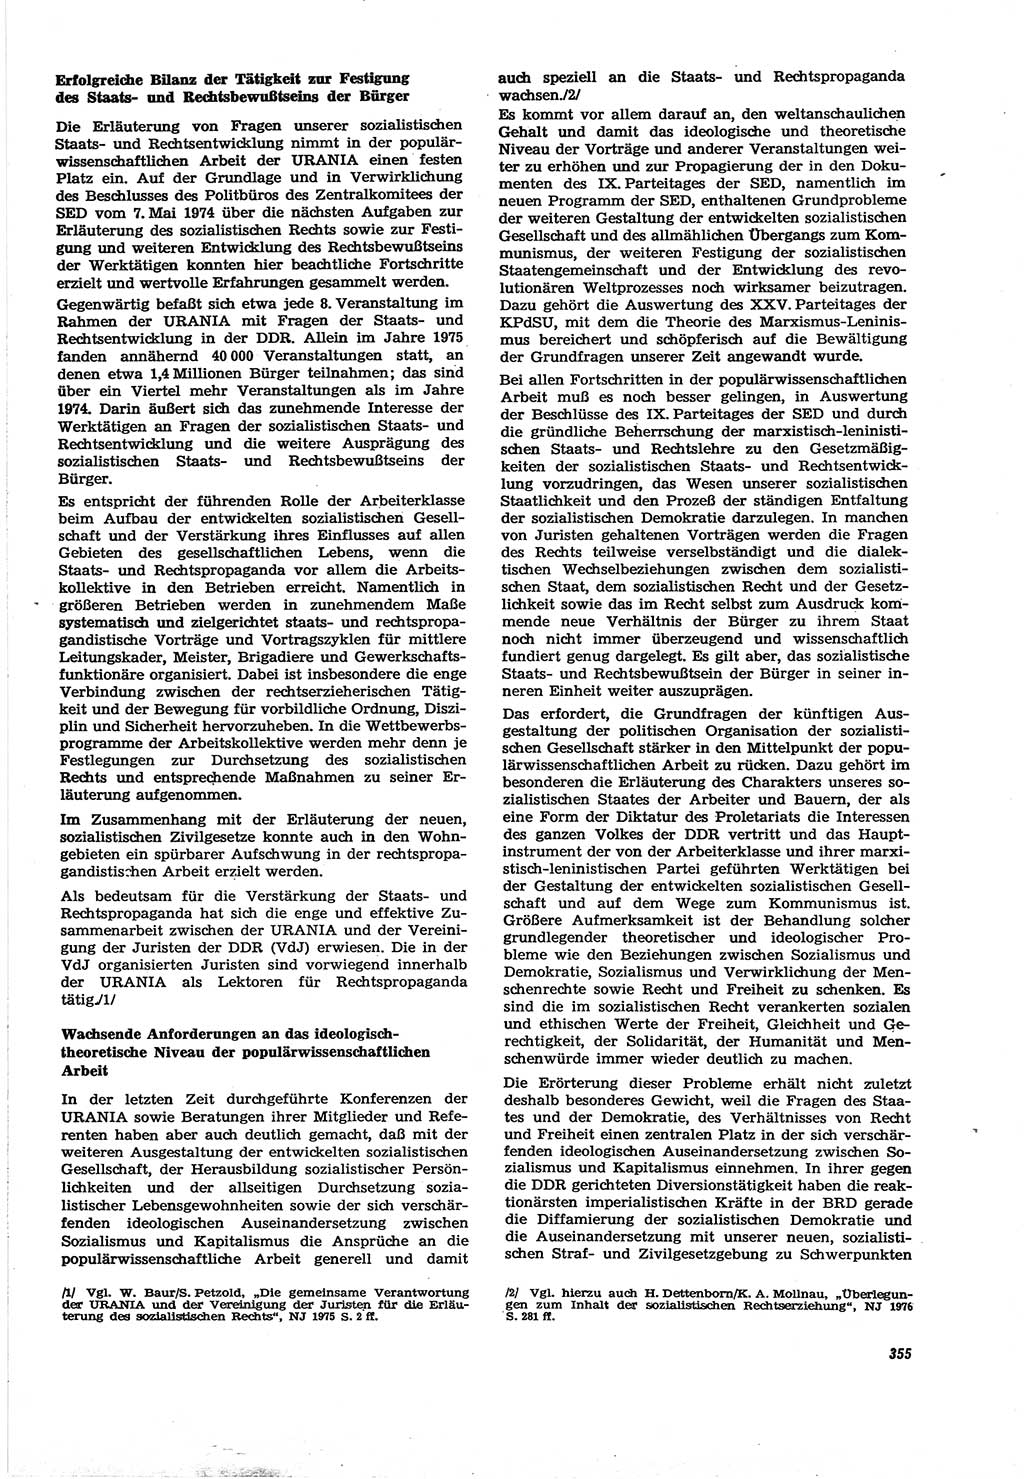 Neue Justiz (NJ), Zeitschrift für Recht und Rechtswissenschaft [Deutsche Demokratische Republik (DDR)], 30. Jahrgang 1976, Seite 355 (NJ DDR 1976, S. 355)